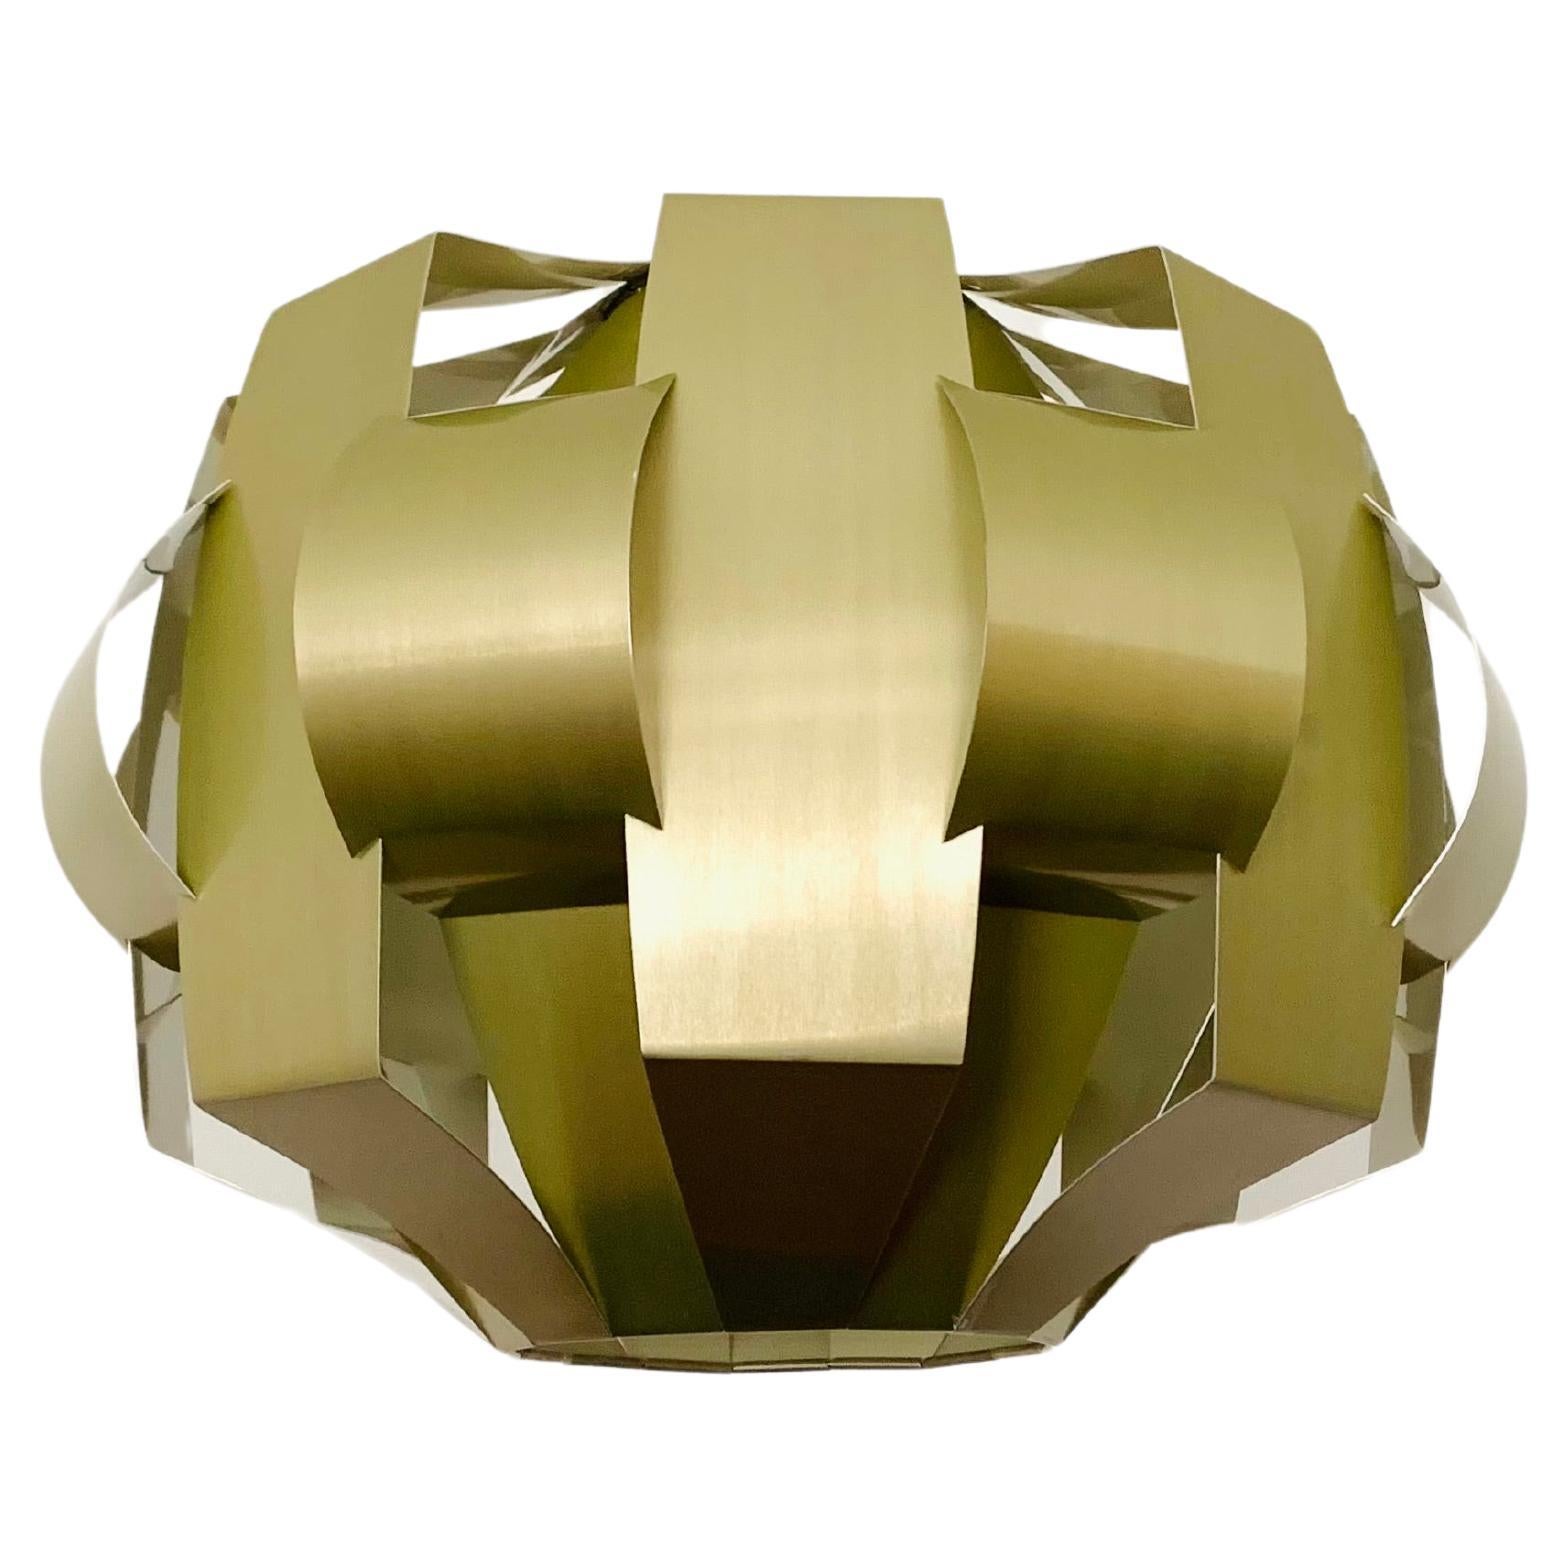 Canadian Origami Metal Pendant Lamp